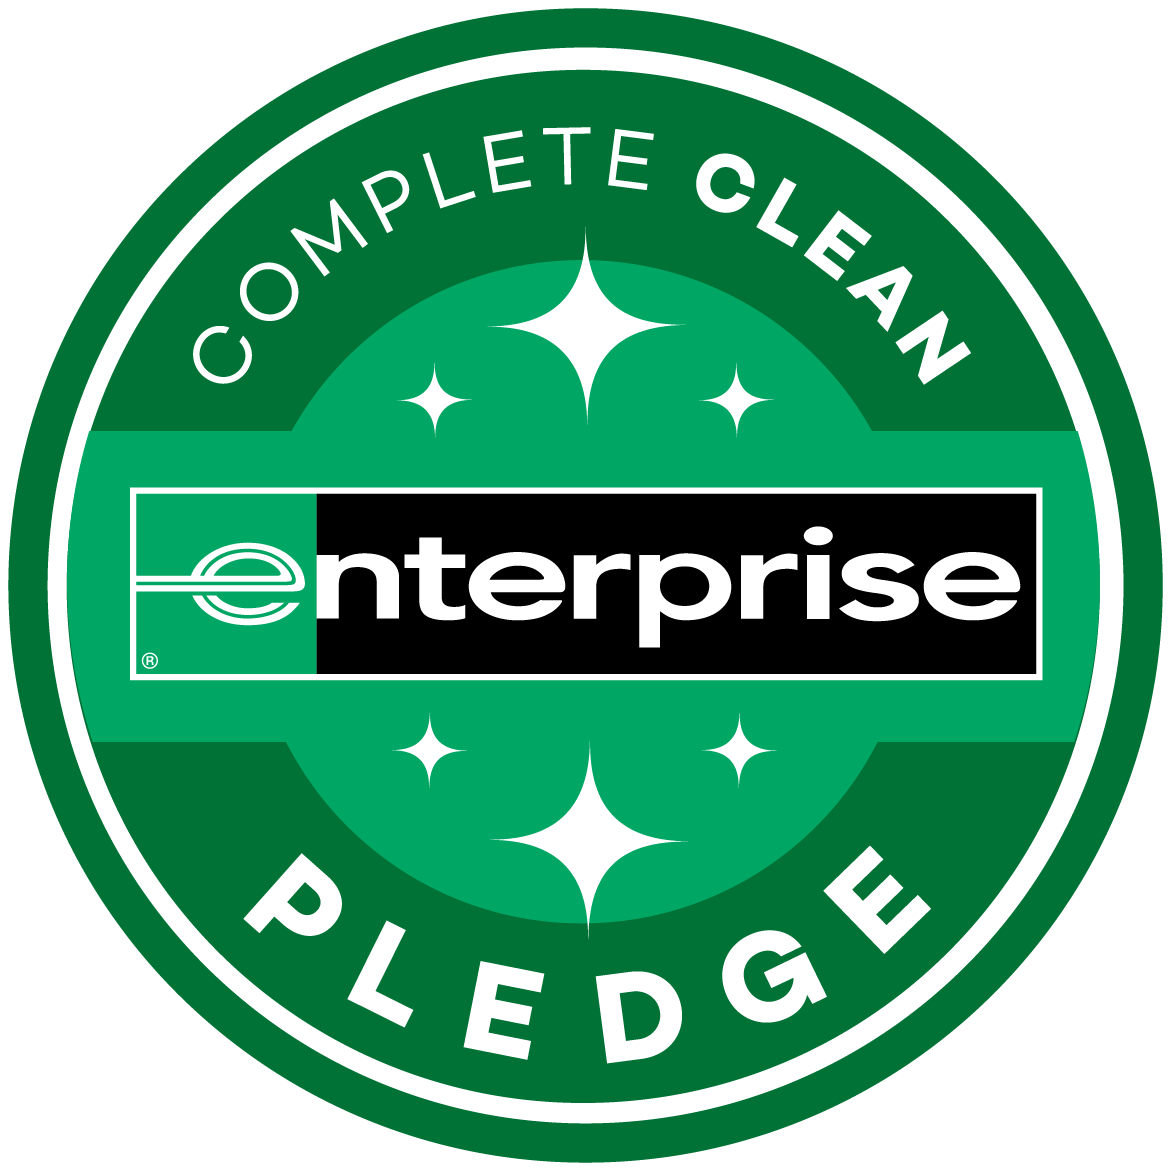 Enterprise Complete Clean Pledge